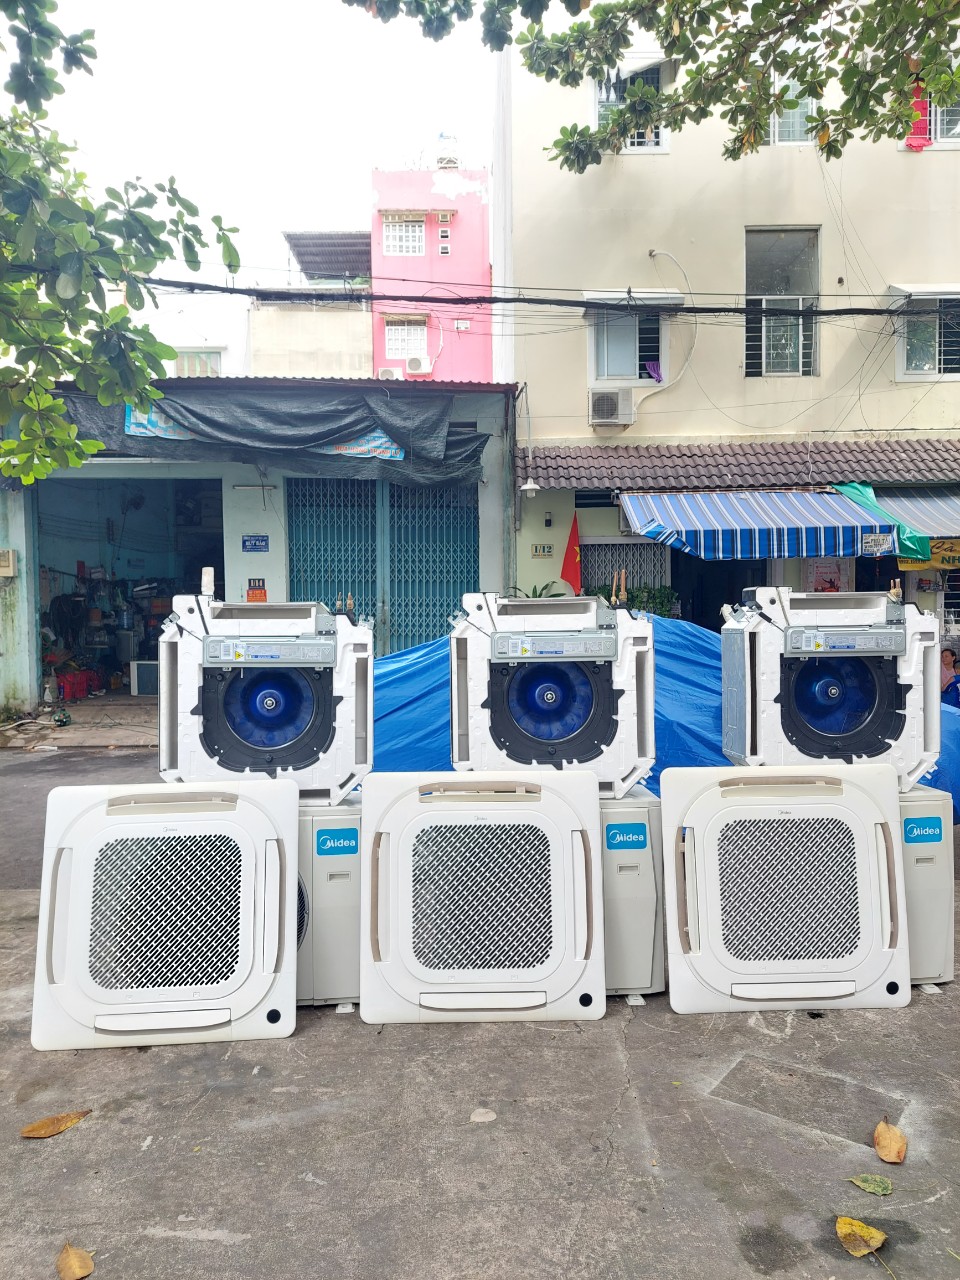 Vì sao chọn Thanh lý - bán máy lạnh cũ ở Bình Phước để thu mua, thanh lý máy lạnh cũ